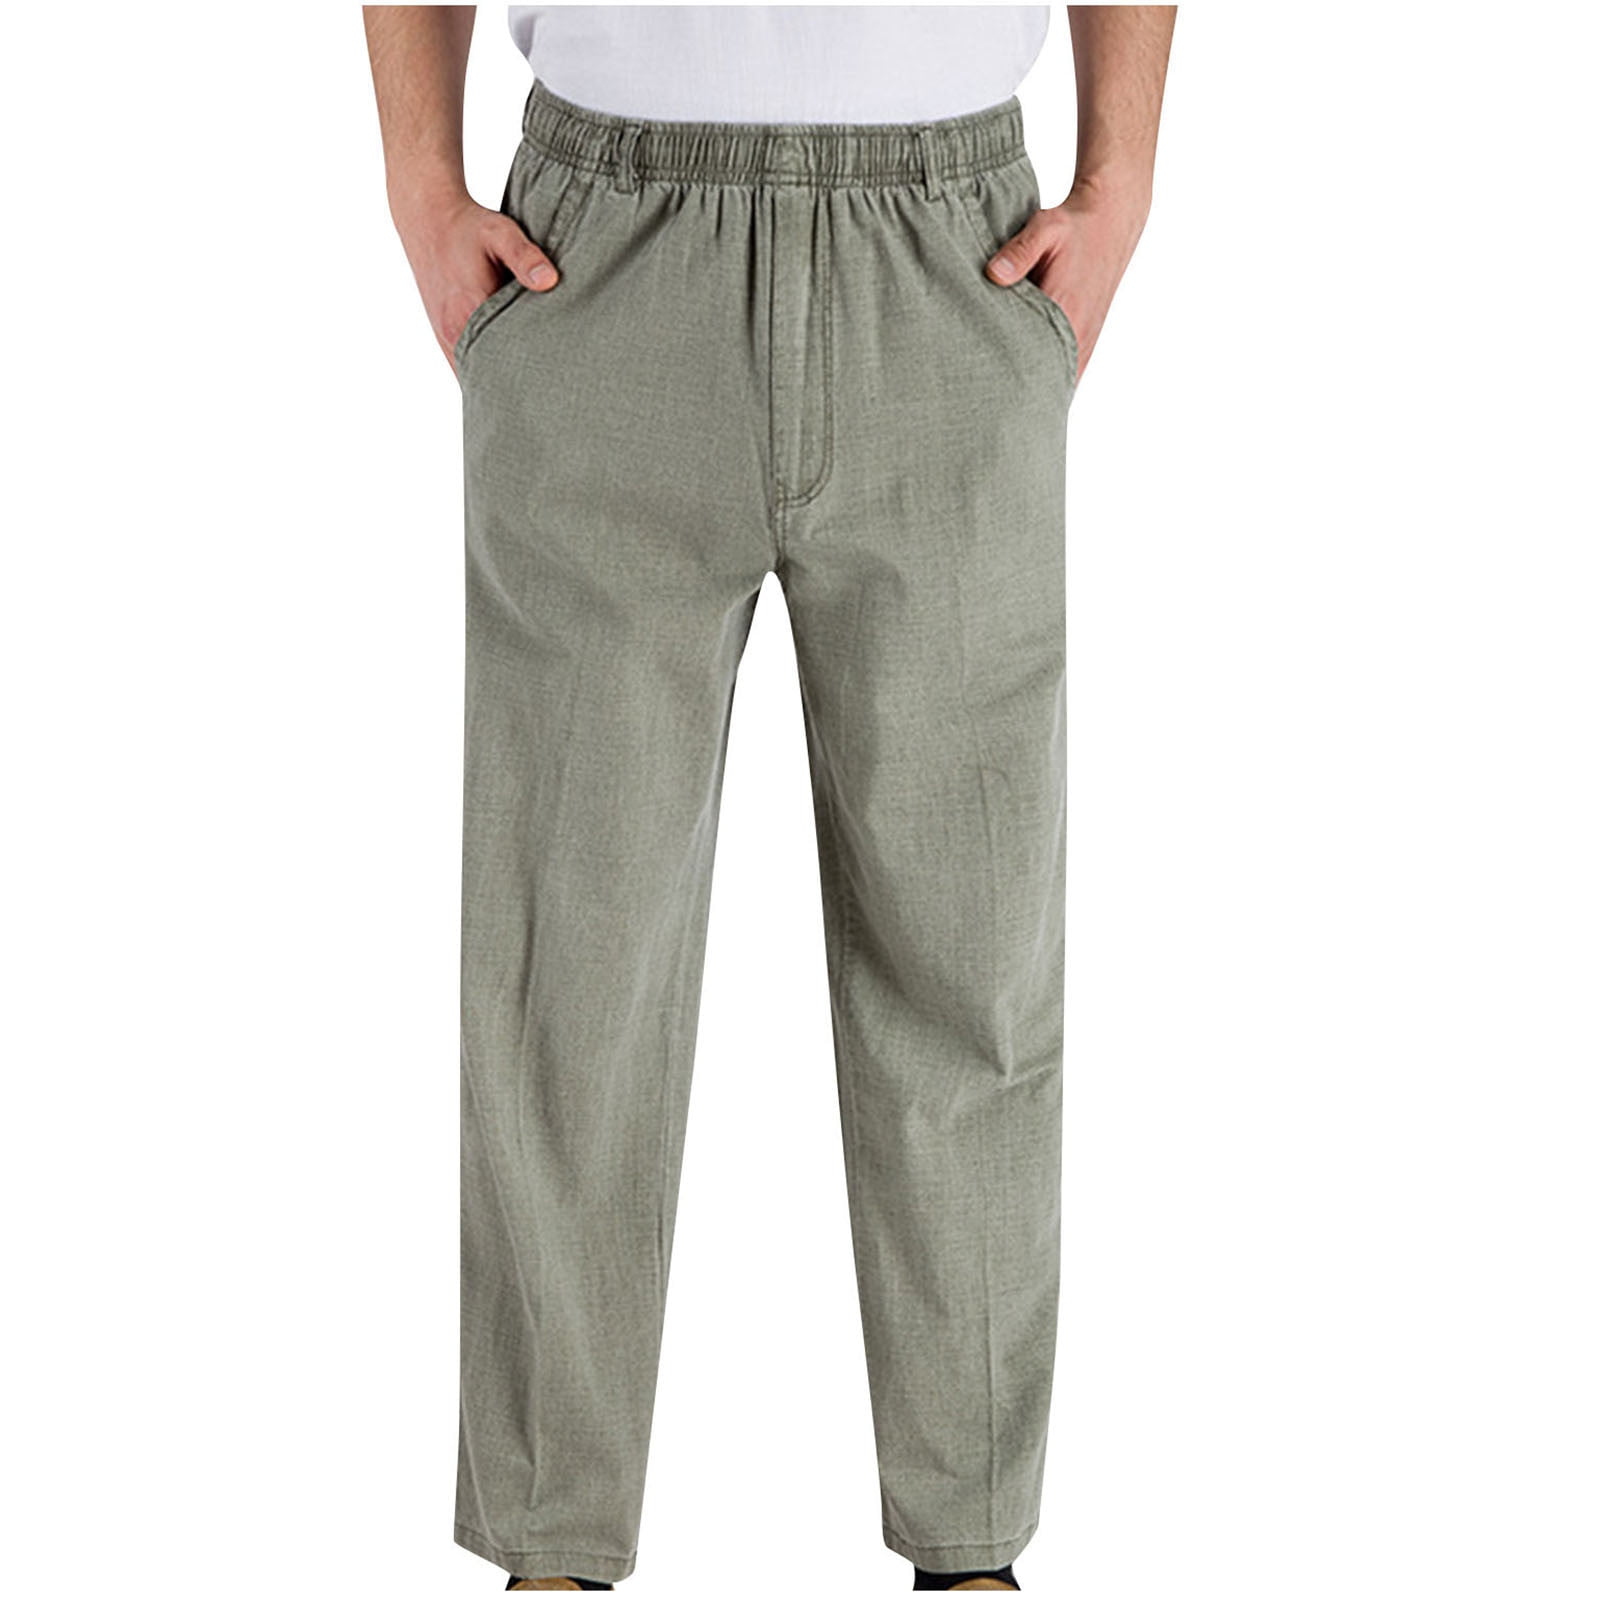 Caveitl Lightweight Pants for Men,Men's Lightweight Casual Long Pants ...